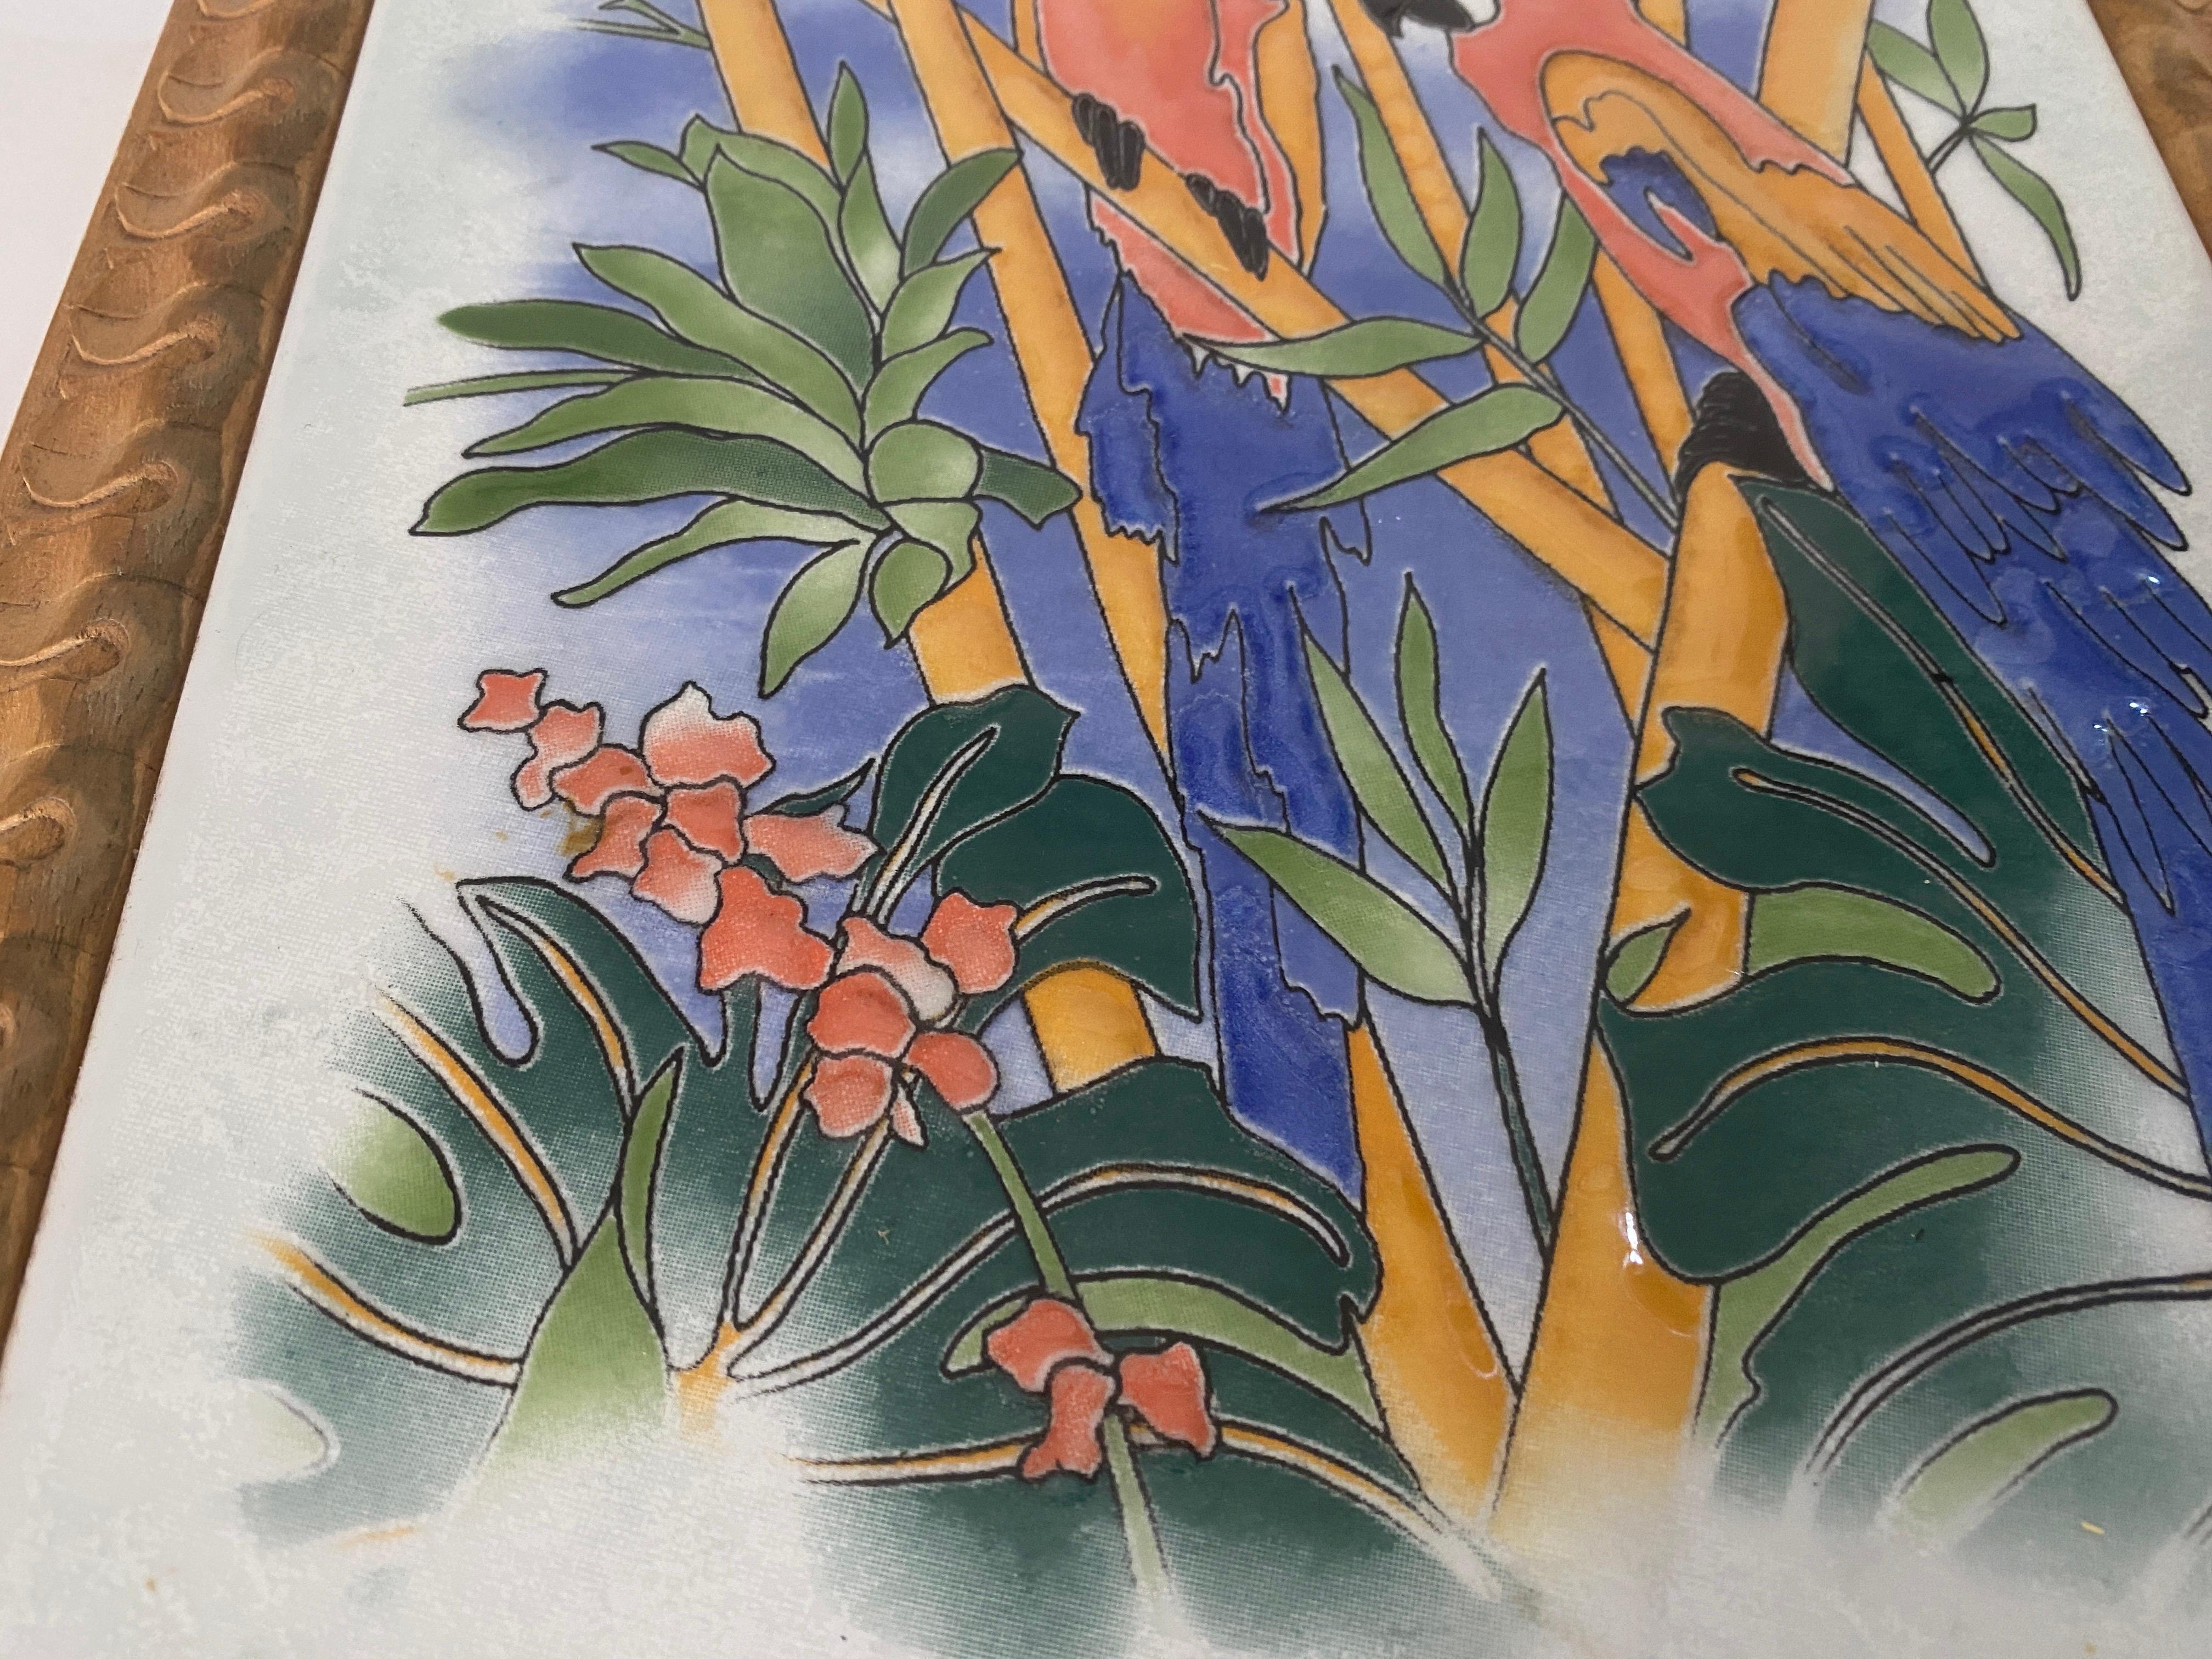 Diese Mitte Tisch oder Untersetzer, ist in Porzellan auf der Oberseite, und die Box ist in Holz. Sie wurde in Frankreich um 1970 durchgeführt.
Das Muster sind dekorative Blumen mit Papageien. Weiße, orange, blaue und grüne Farben.